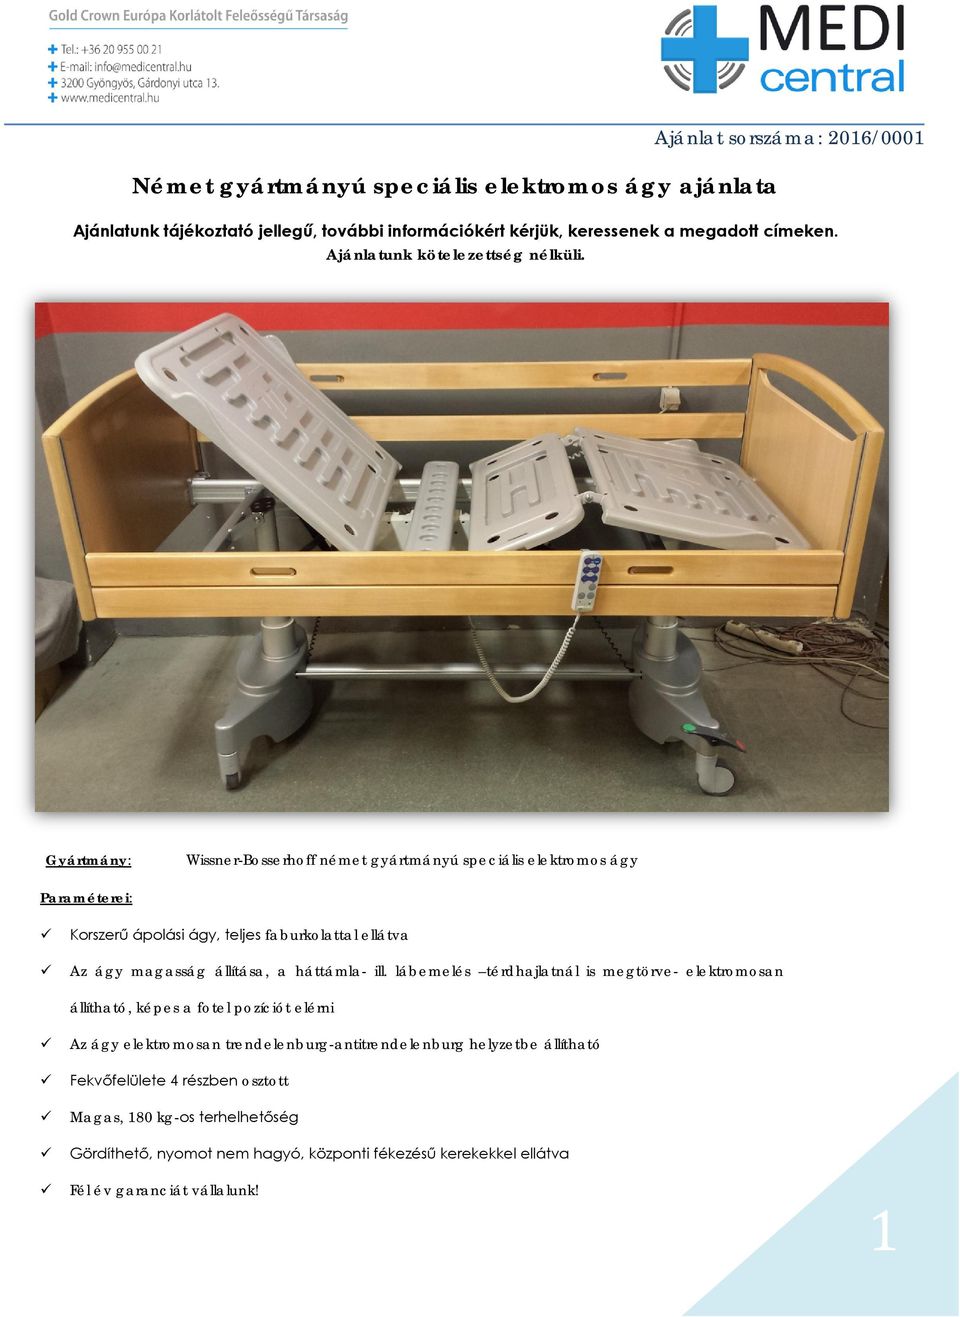 Gyártmány: Wissner-Bosserhoff német gyártmányú speciális elektromos ágy Paraméterei: Korszerű ápolási ágy, teljes faburkolattal ellátva Az ágy magasság állítása, a háttámla-